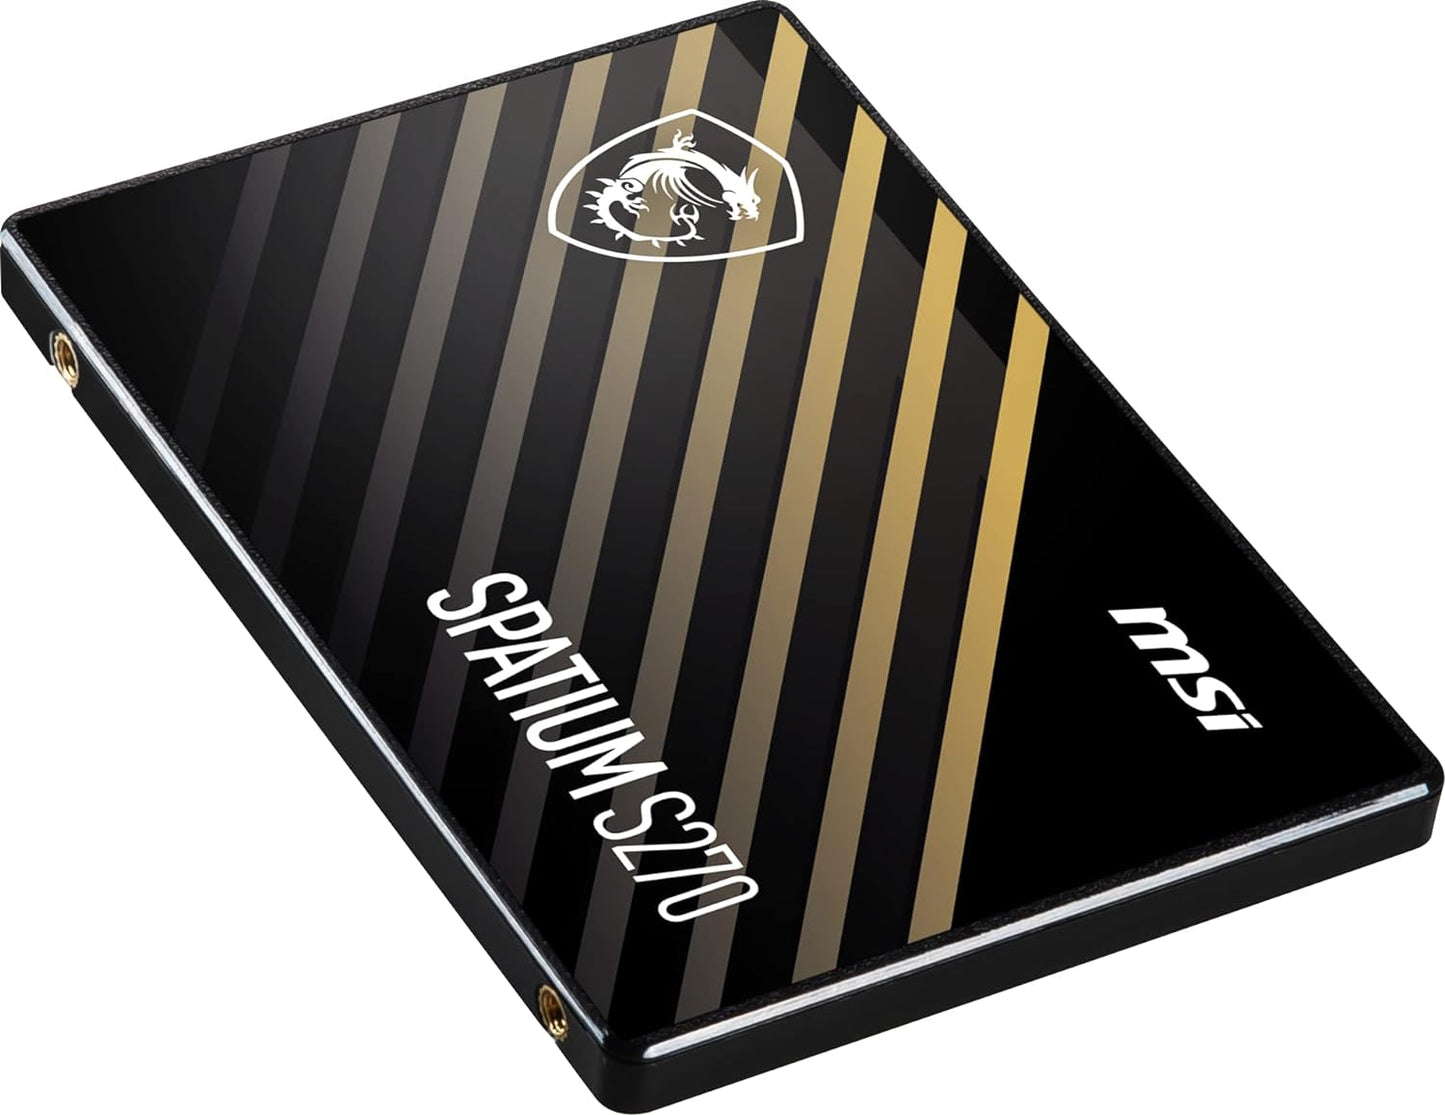 MSI SPATIUM S270 SATA 2,5" – SSD de 240 GB (SATA III, Leitura de 500 MB/s, gravação de 400 MB/s), preto